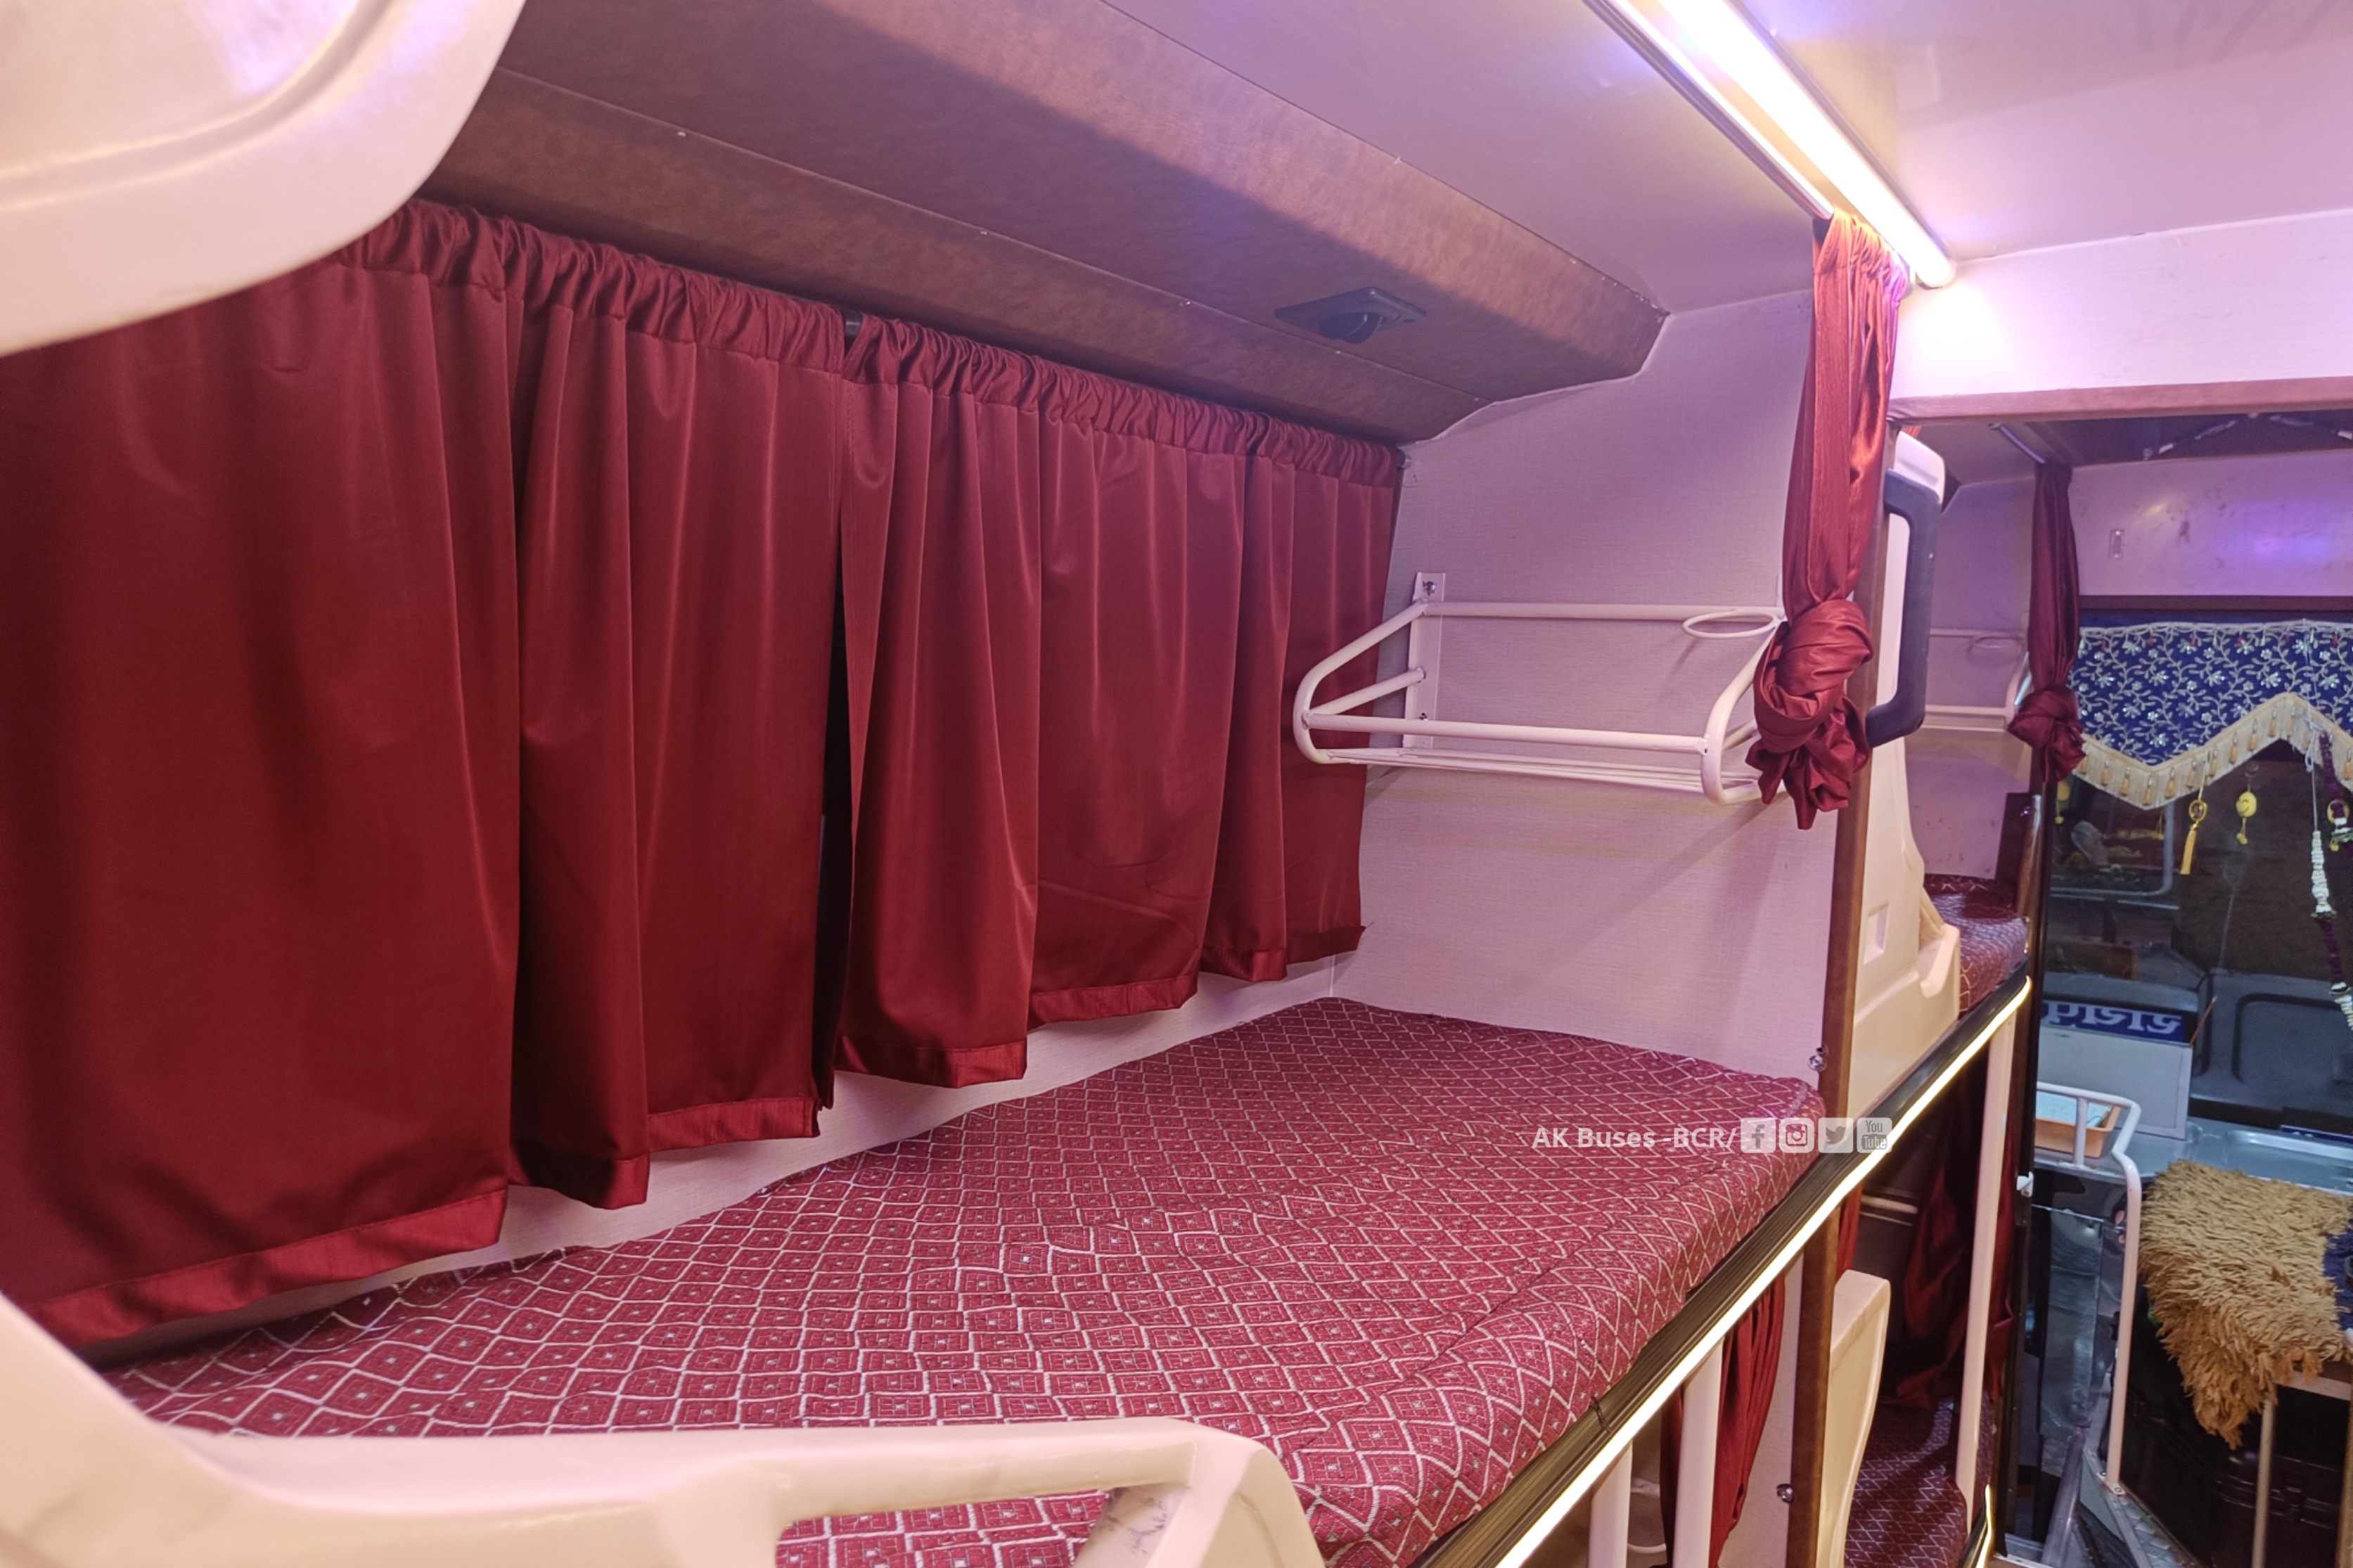 Kanker Roadways New Eicher 13.5m bus interior single sleeper